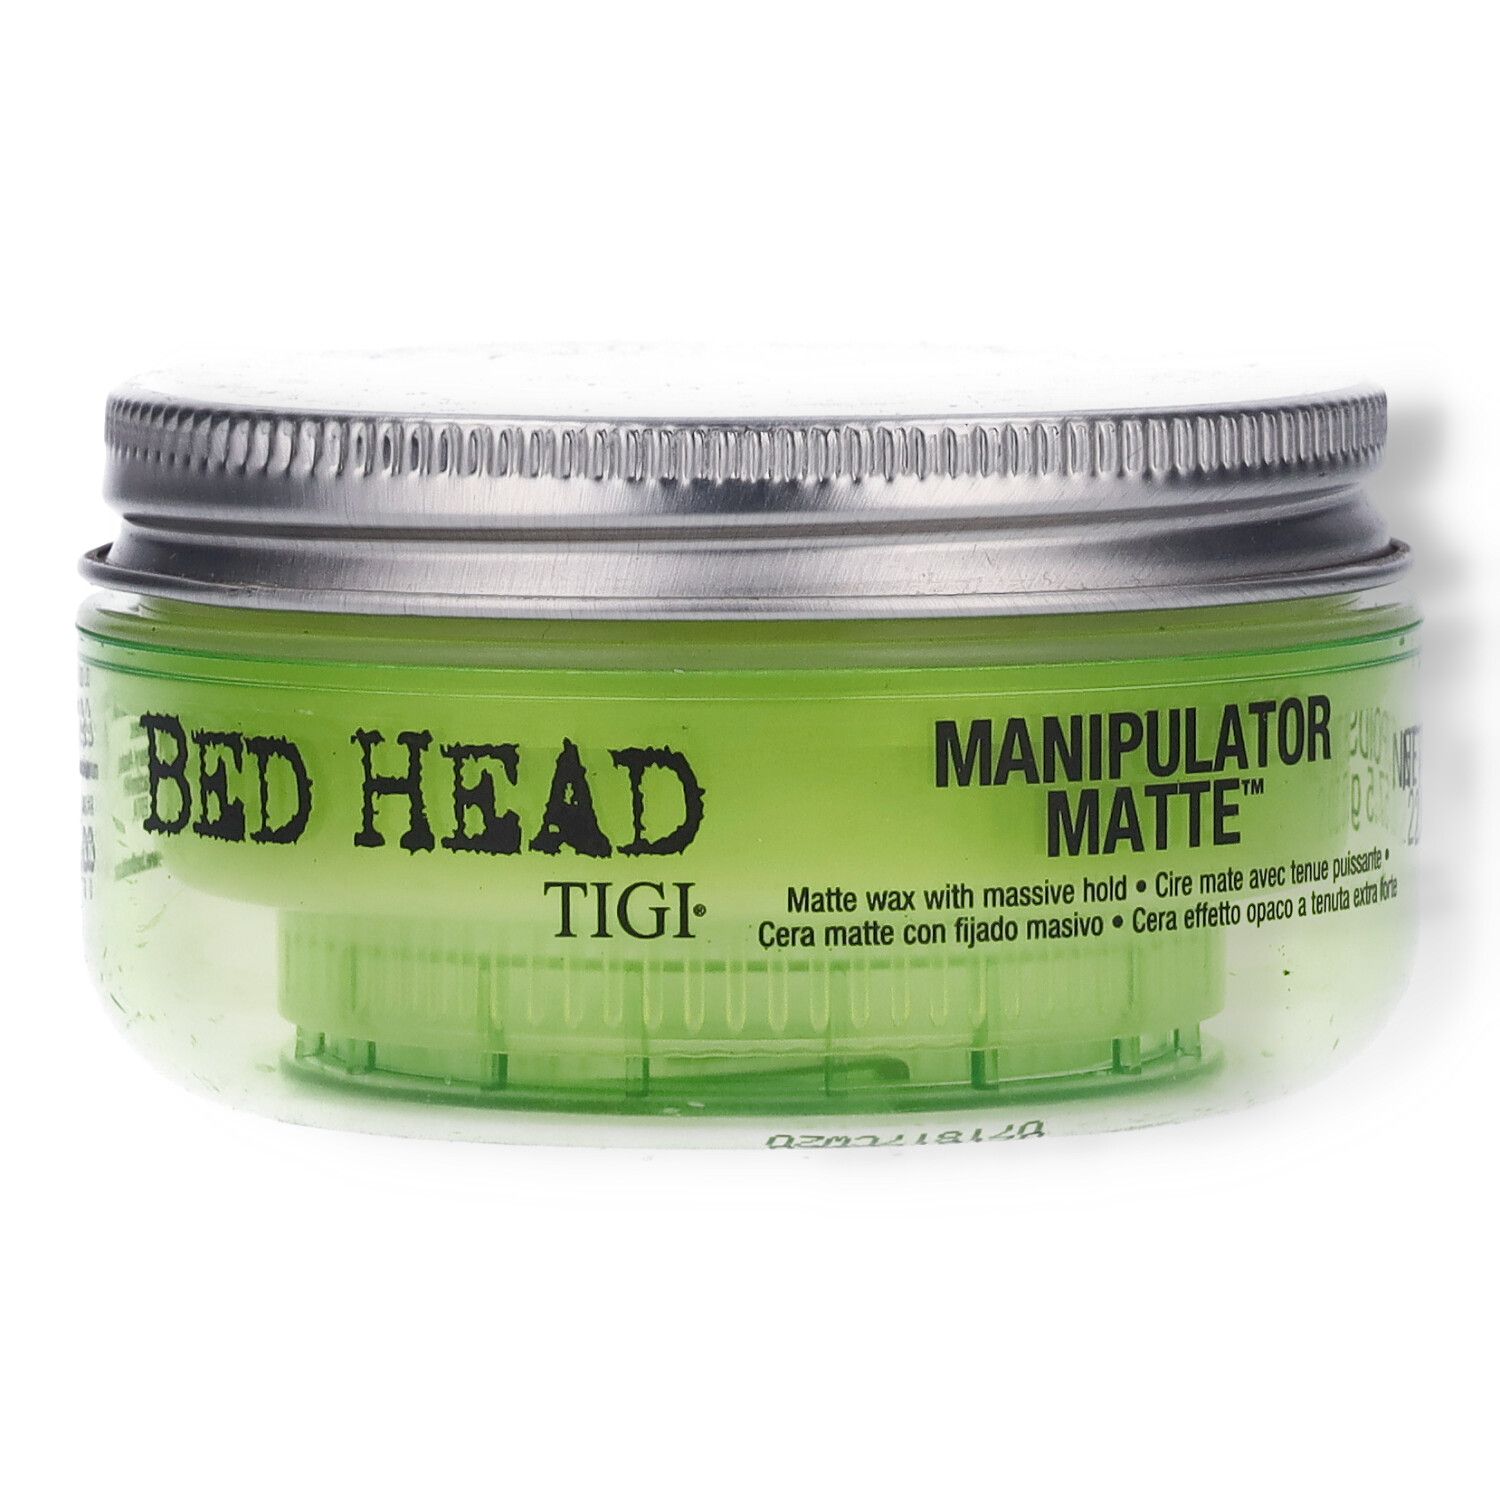 TIGI Bed Head Manipulator Matte Wax - 57g